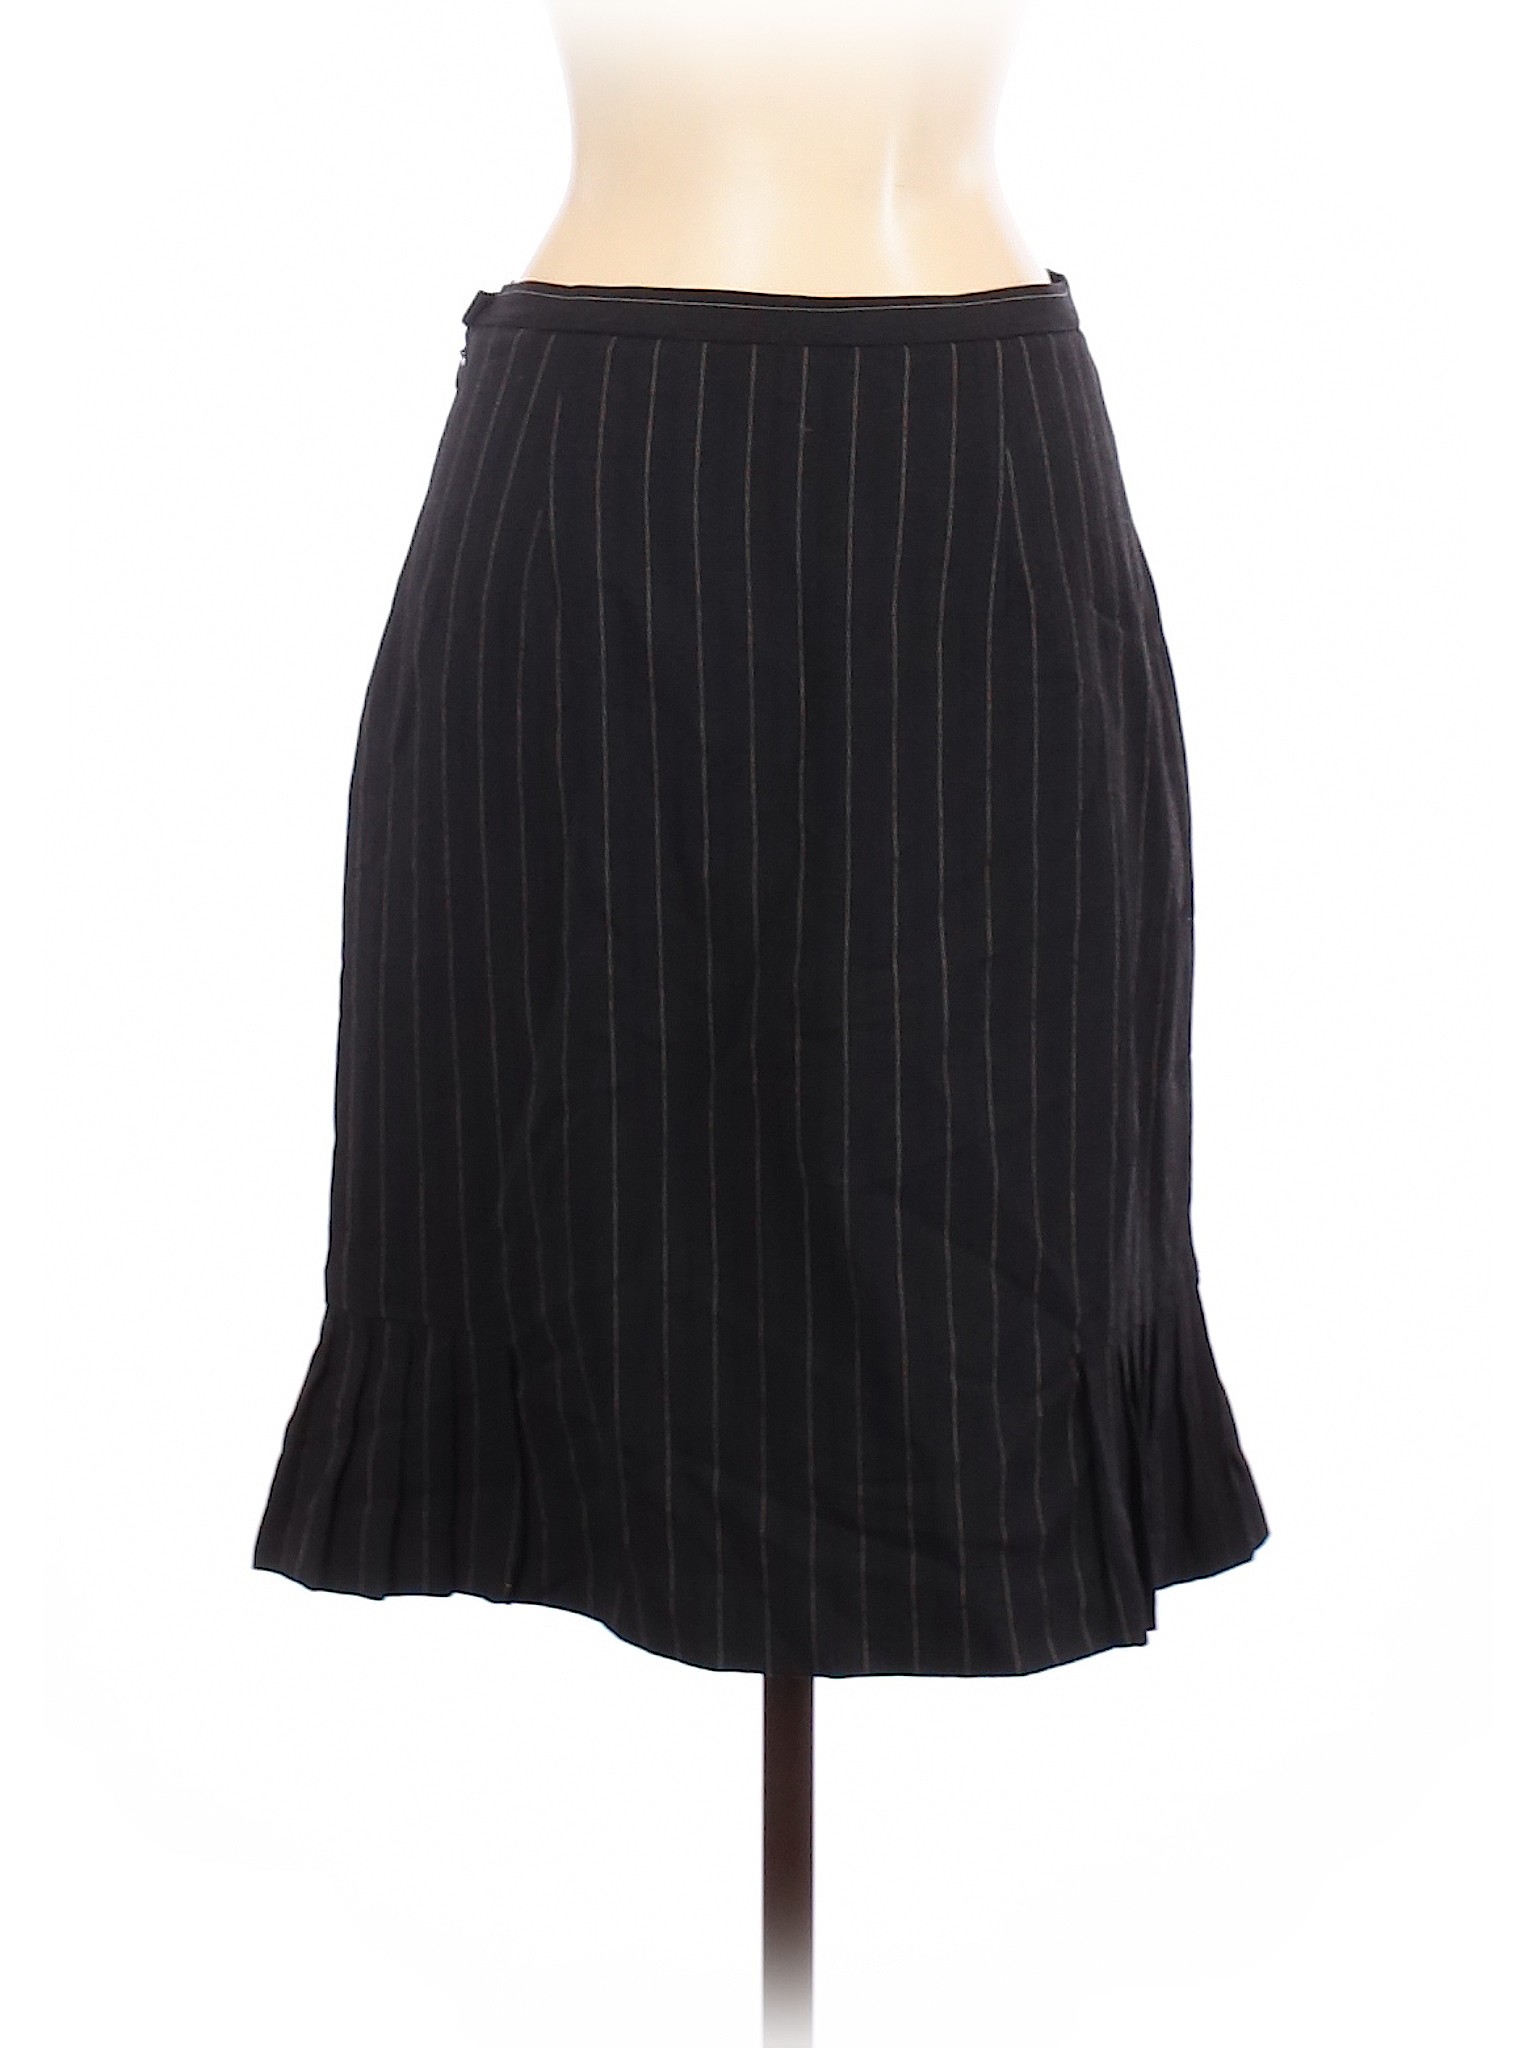 M.S.S.P. Women Black Wool Skirt 2 | eBay